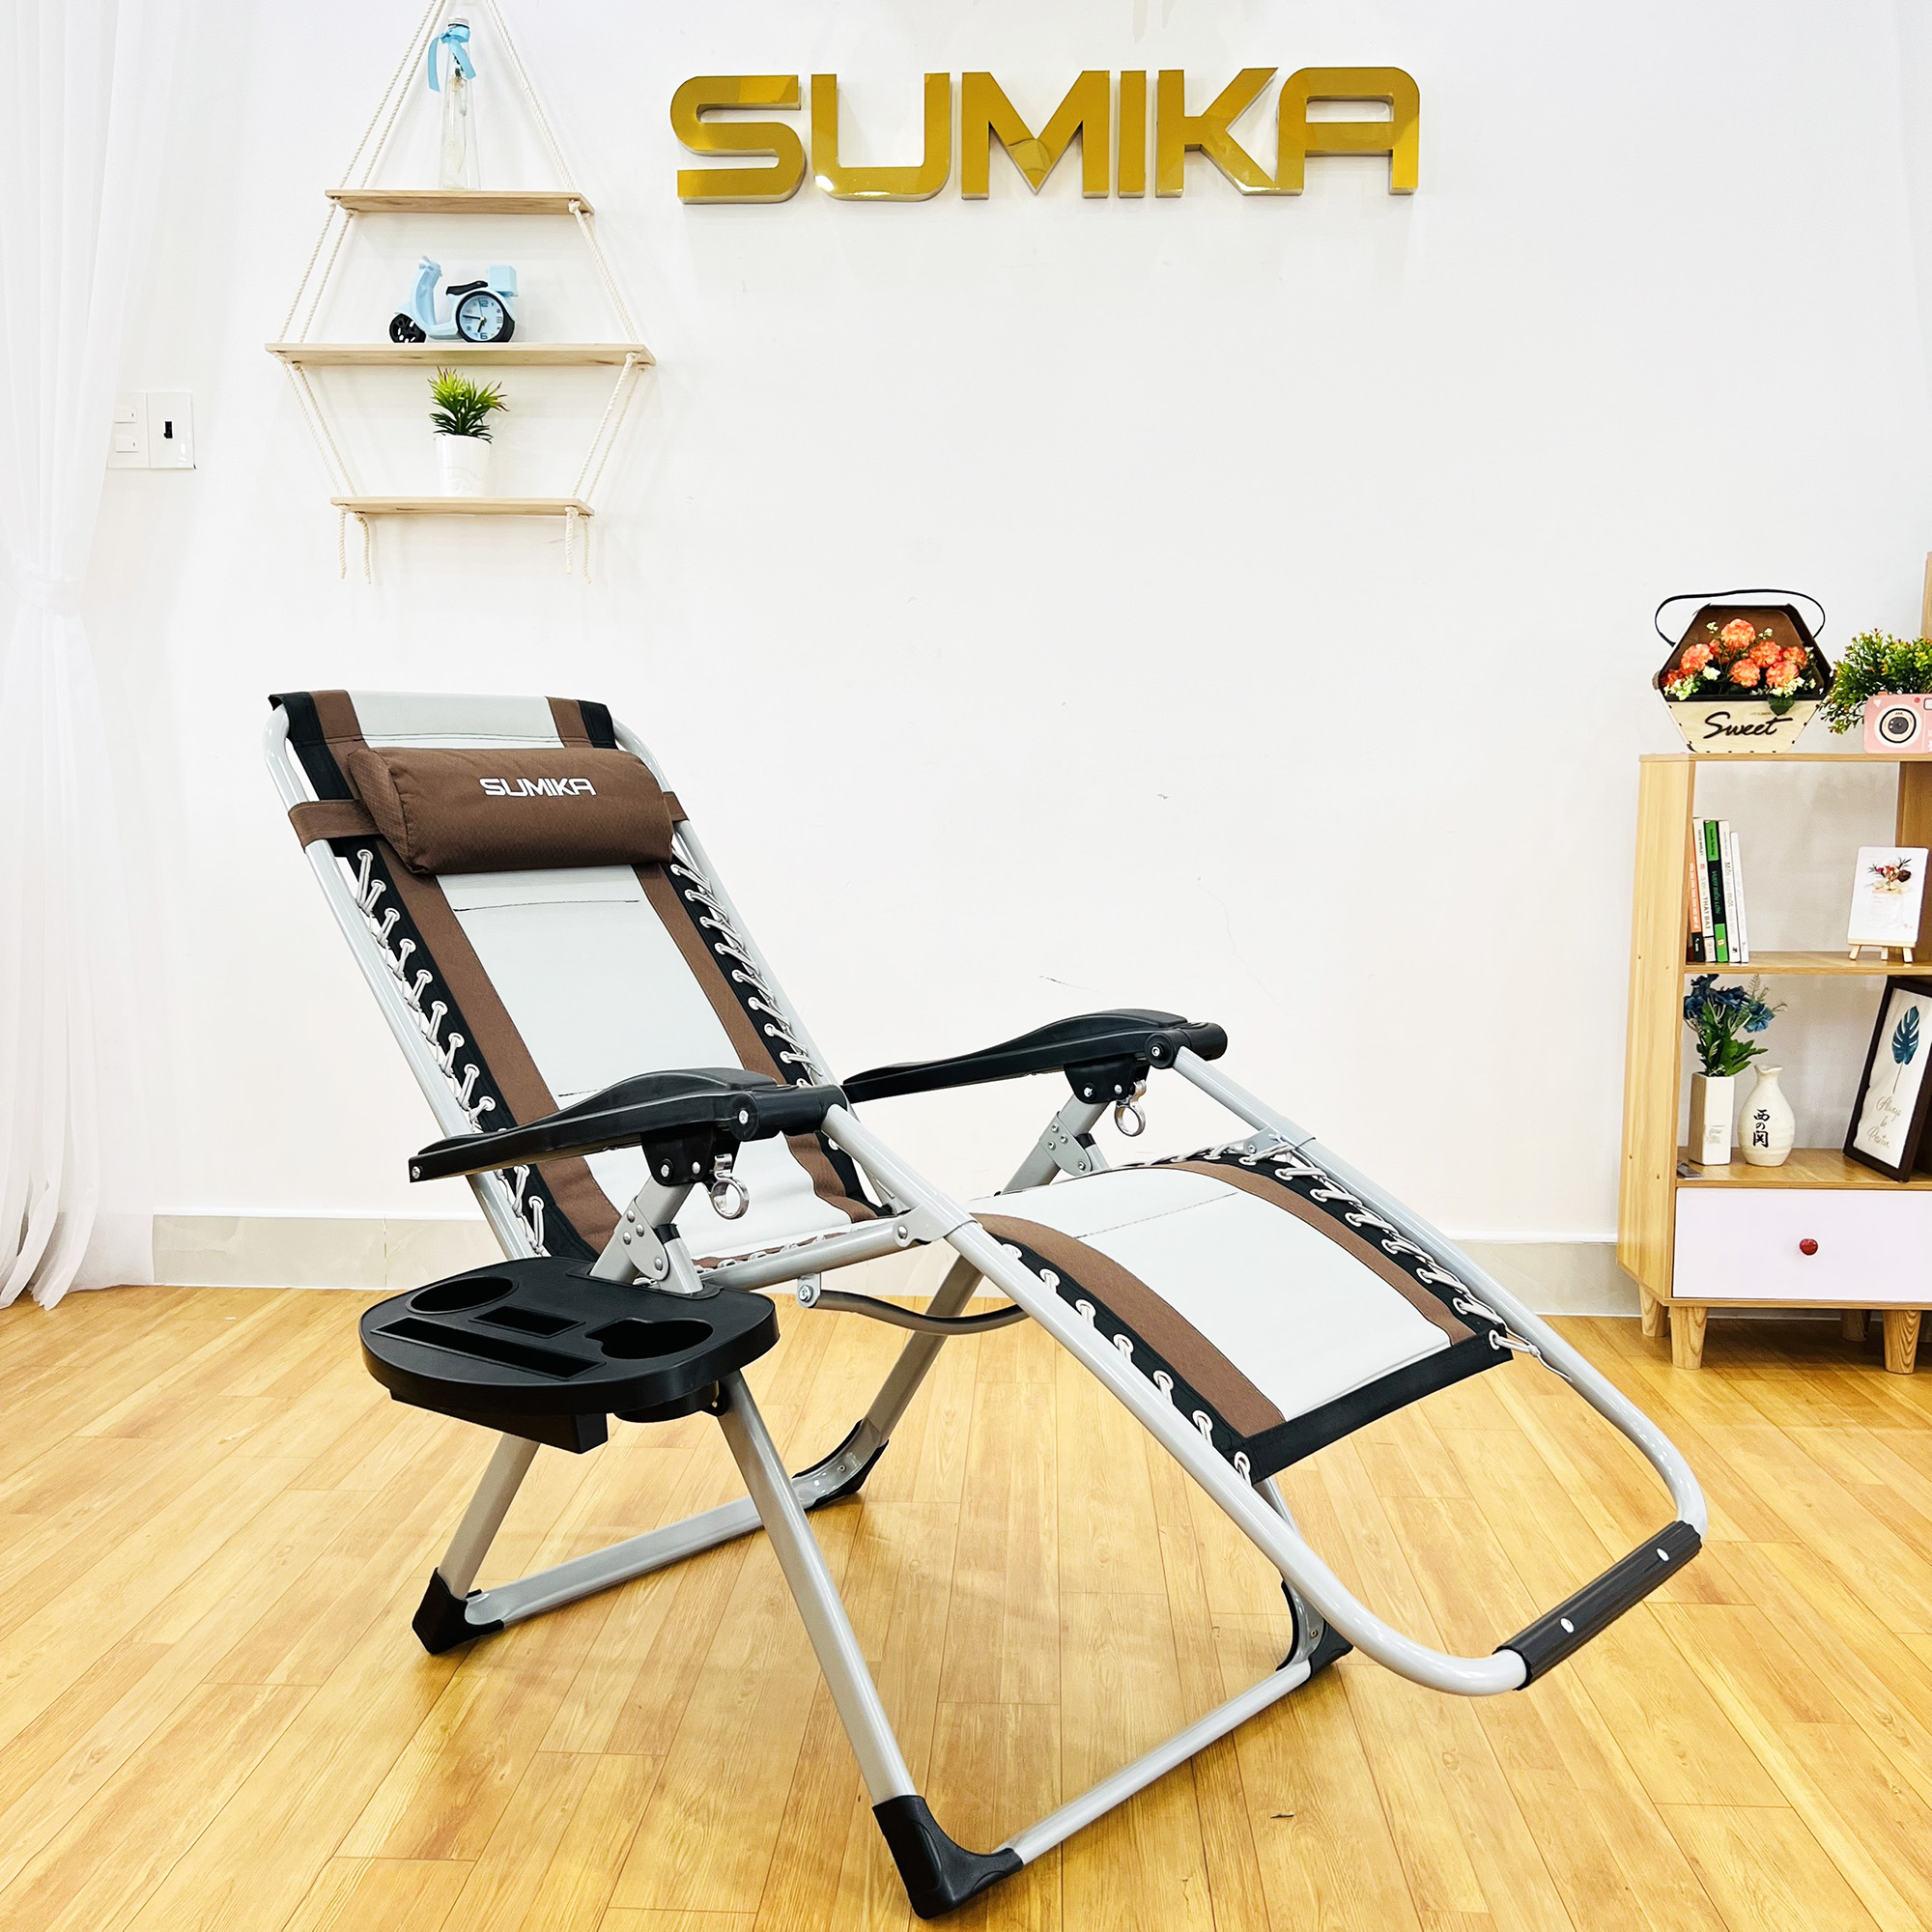 Ghế xếp thư giãn SUMIKA 139 -  khóa bằng kim loại, vải lưới Textilene thoáng khí kèm nệm, tải trọng 300kg